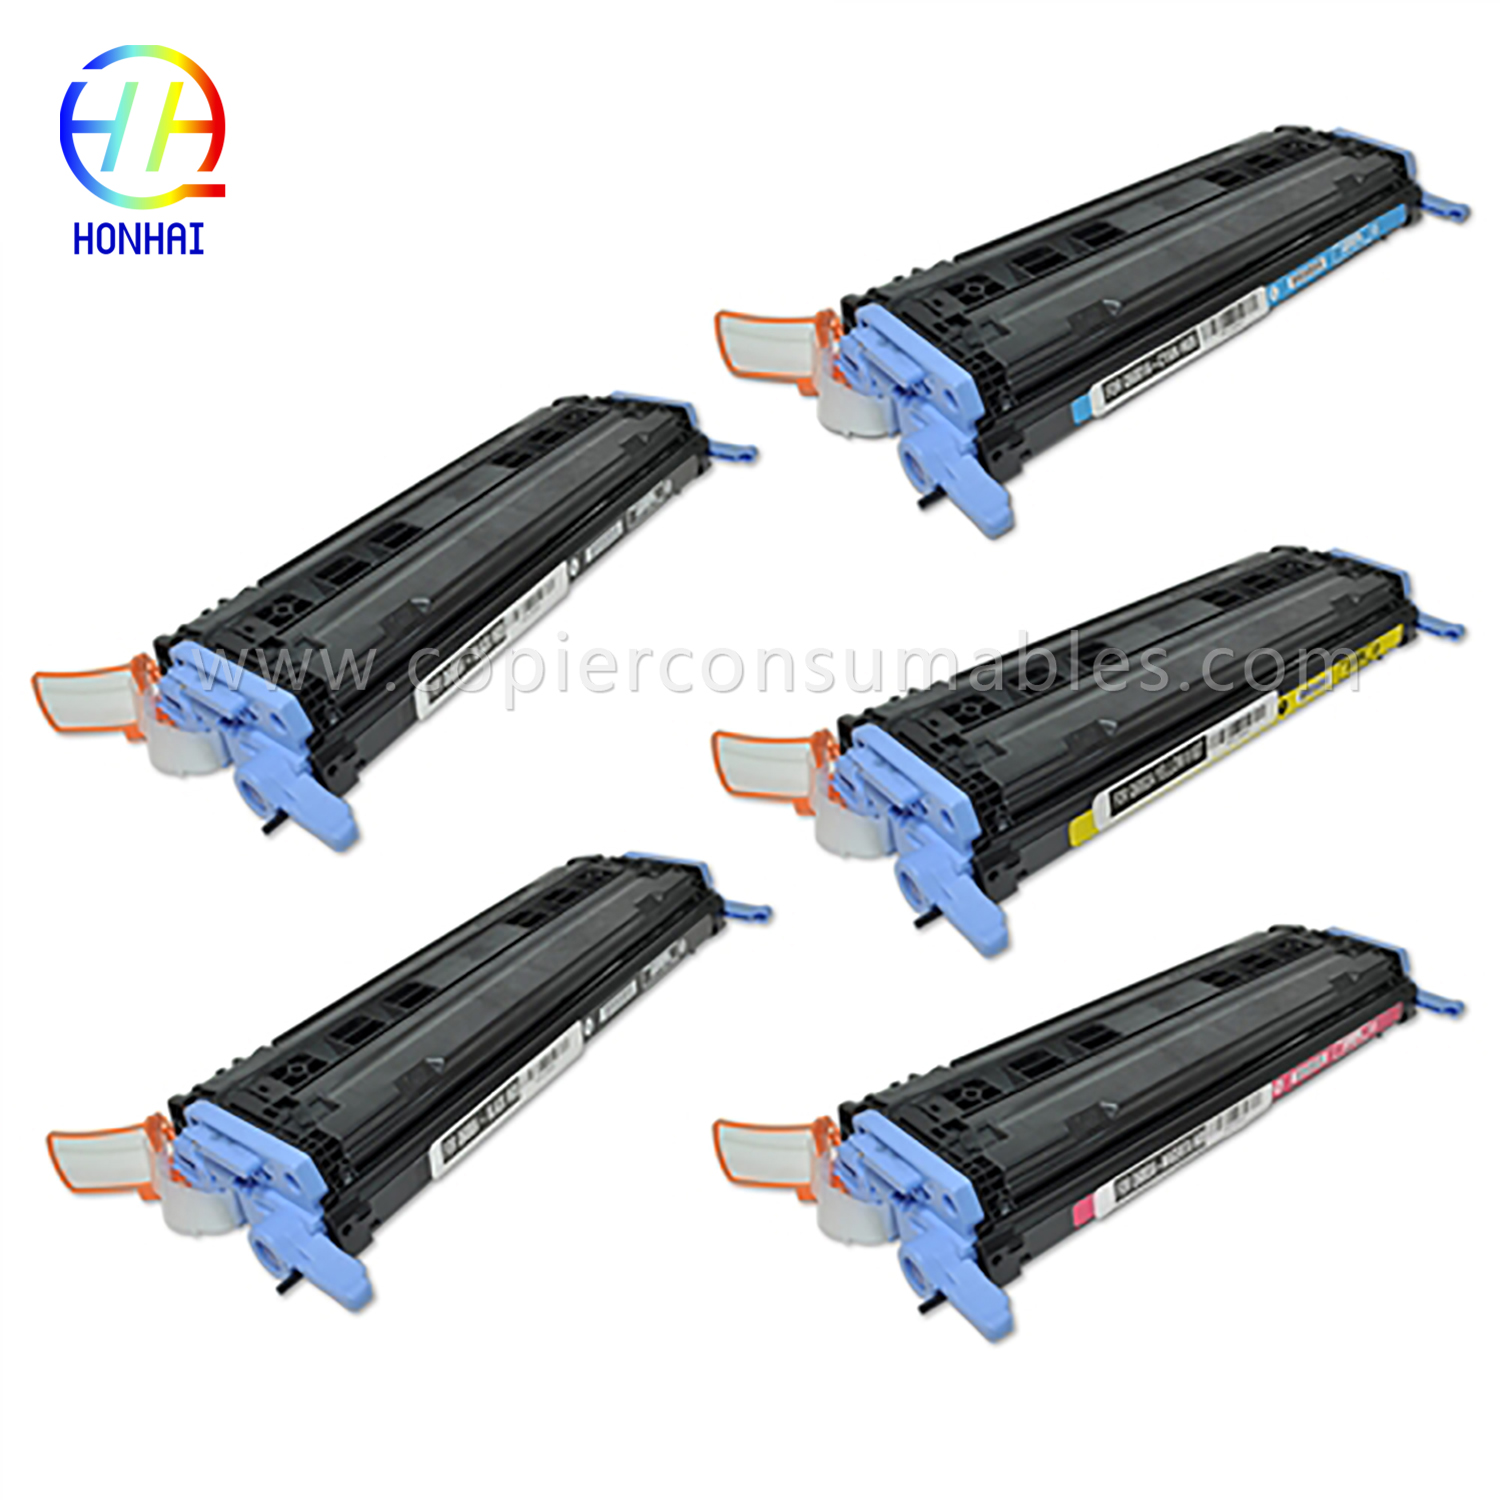 Toner Cartridge na HP Laserjet 1600 2600 2605 Cm1015mfp Cm1017mfp (Q6000A Q6001A Q6002A Q6003A) (2) 拷贝